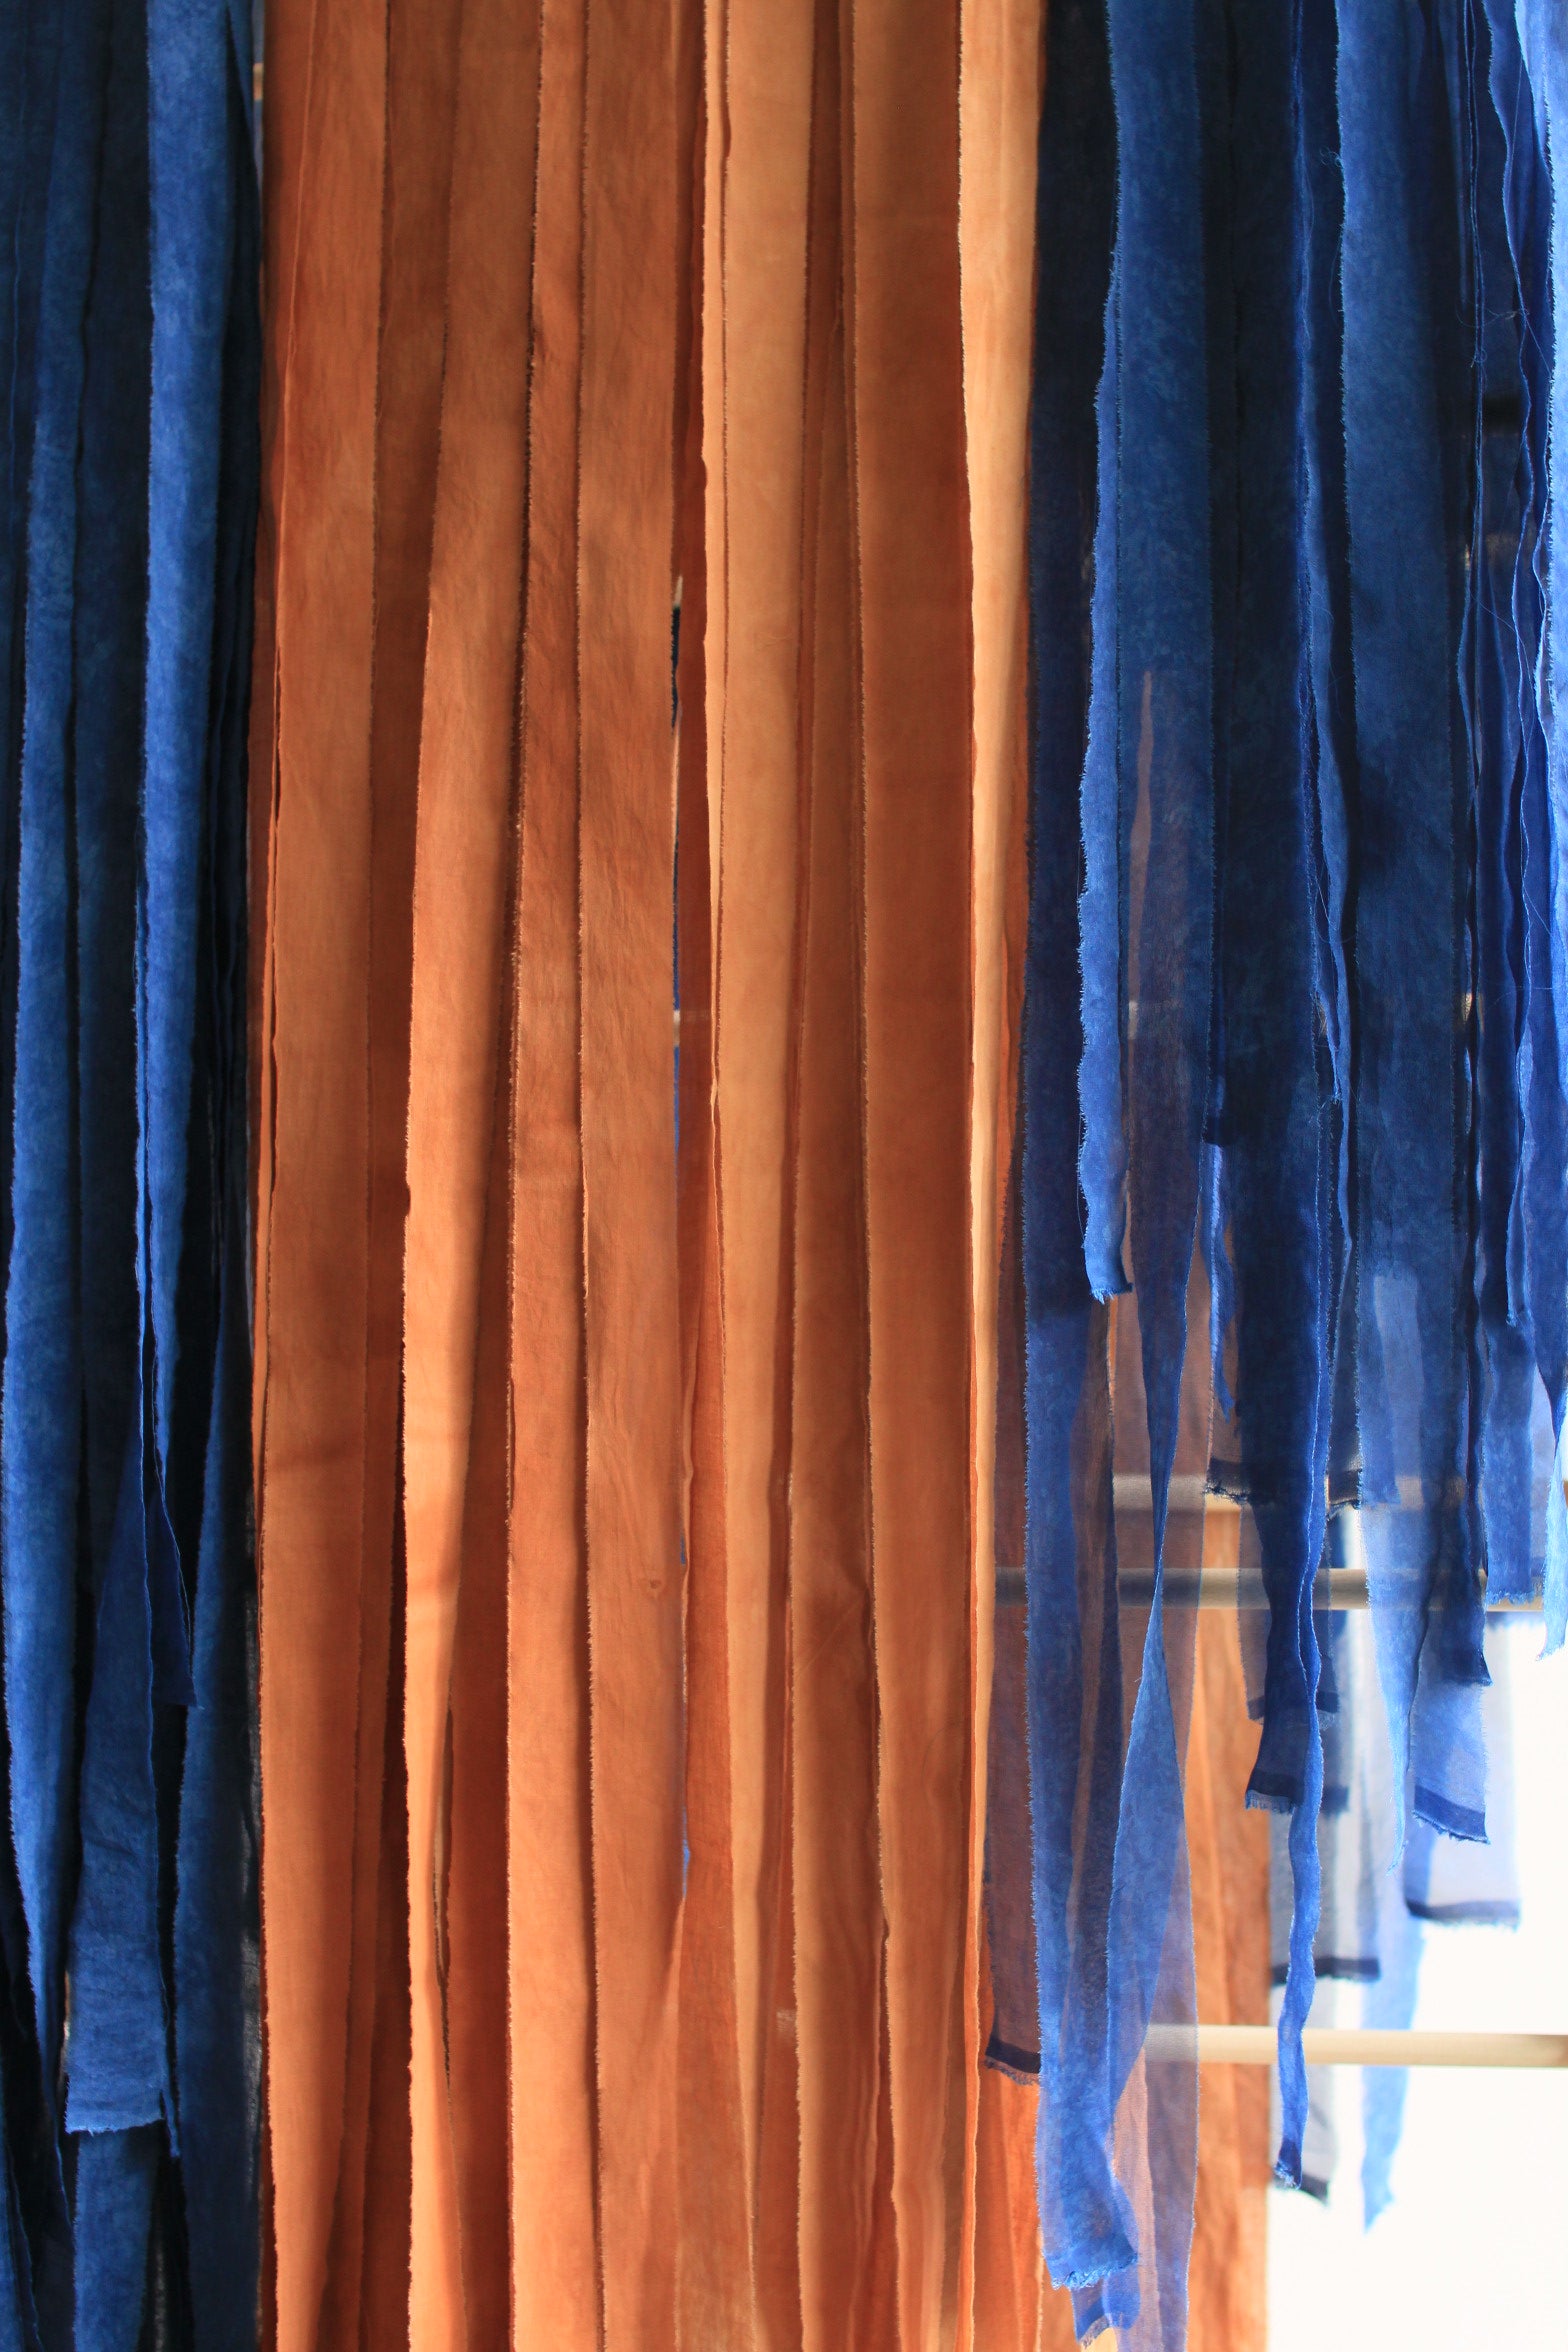 Ruban en popeline de coton - couleur "terra cotta" - largeur 3cm, longueur 2,5m